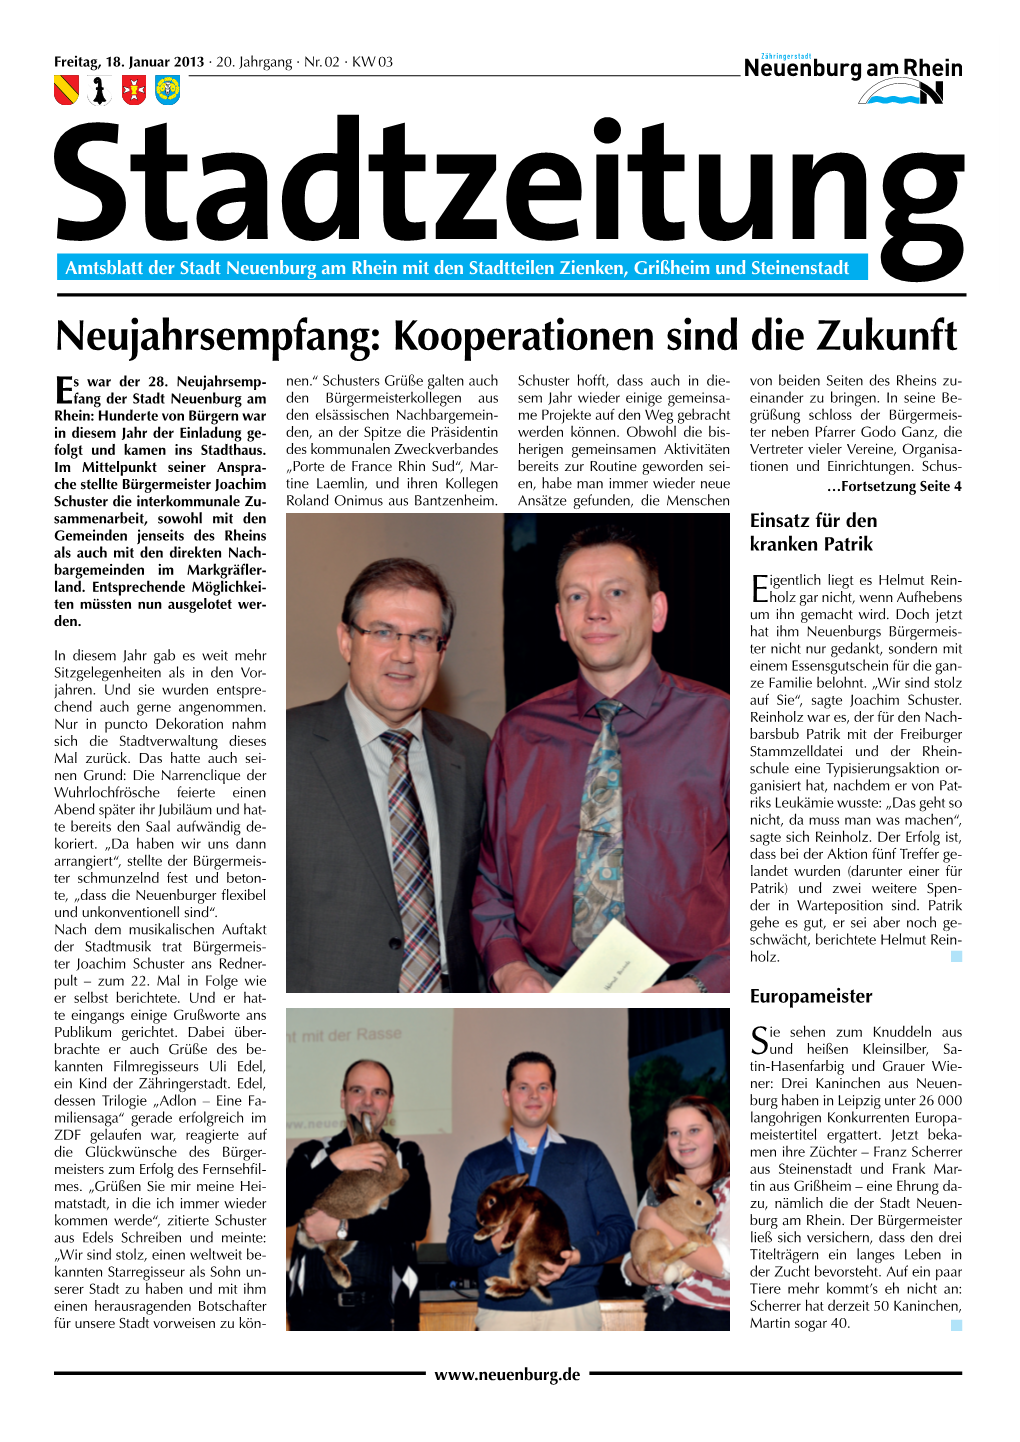 Stadtzeitung 2013 KW 03